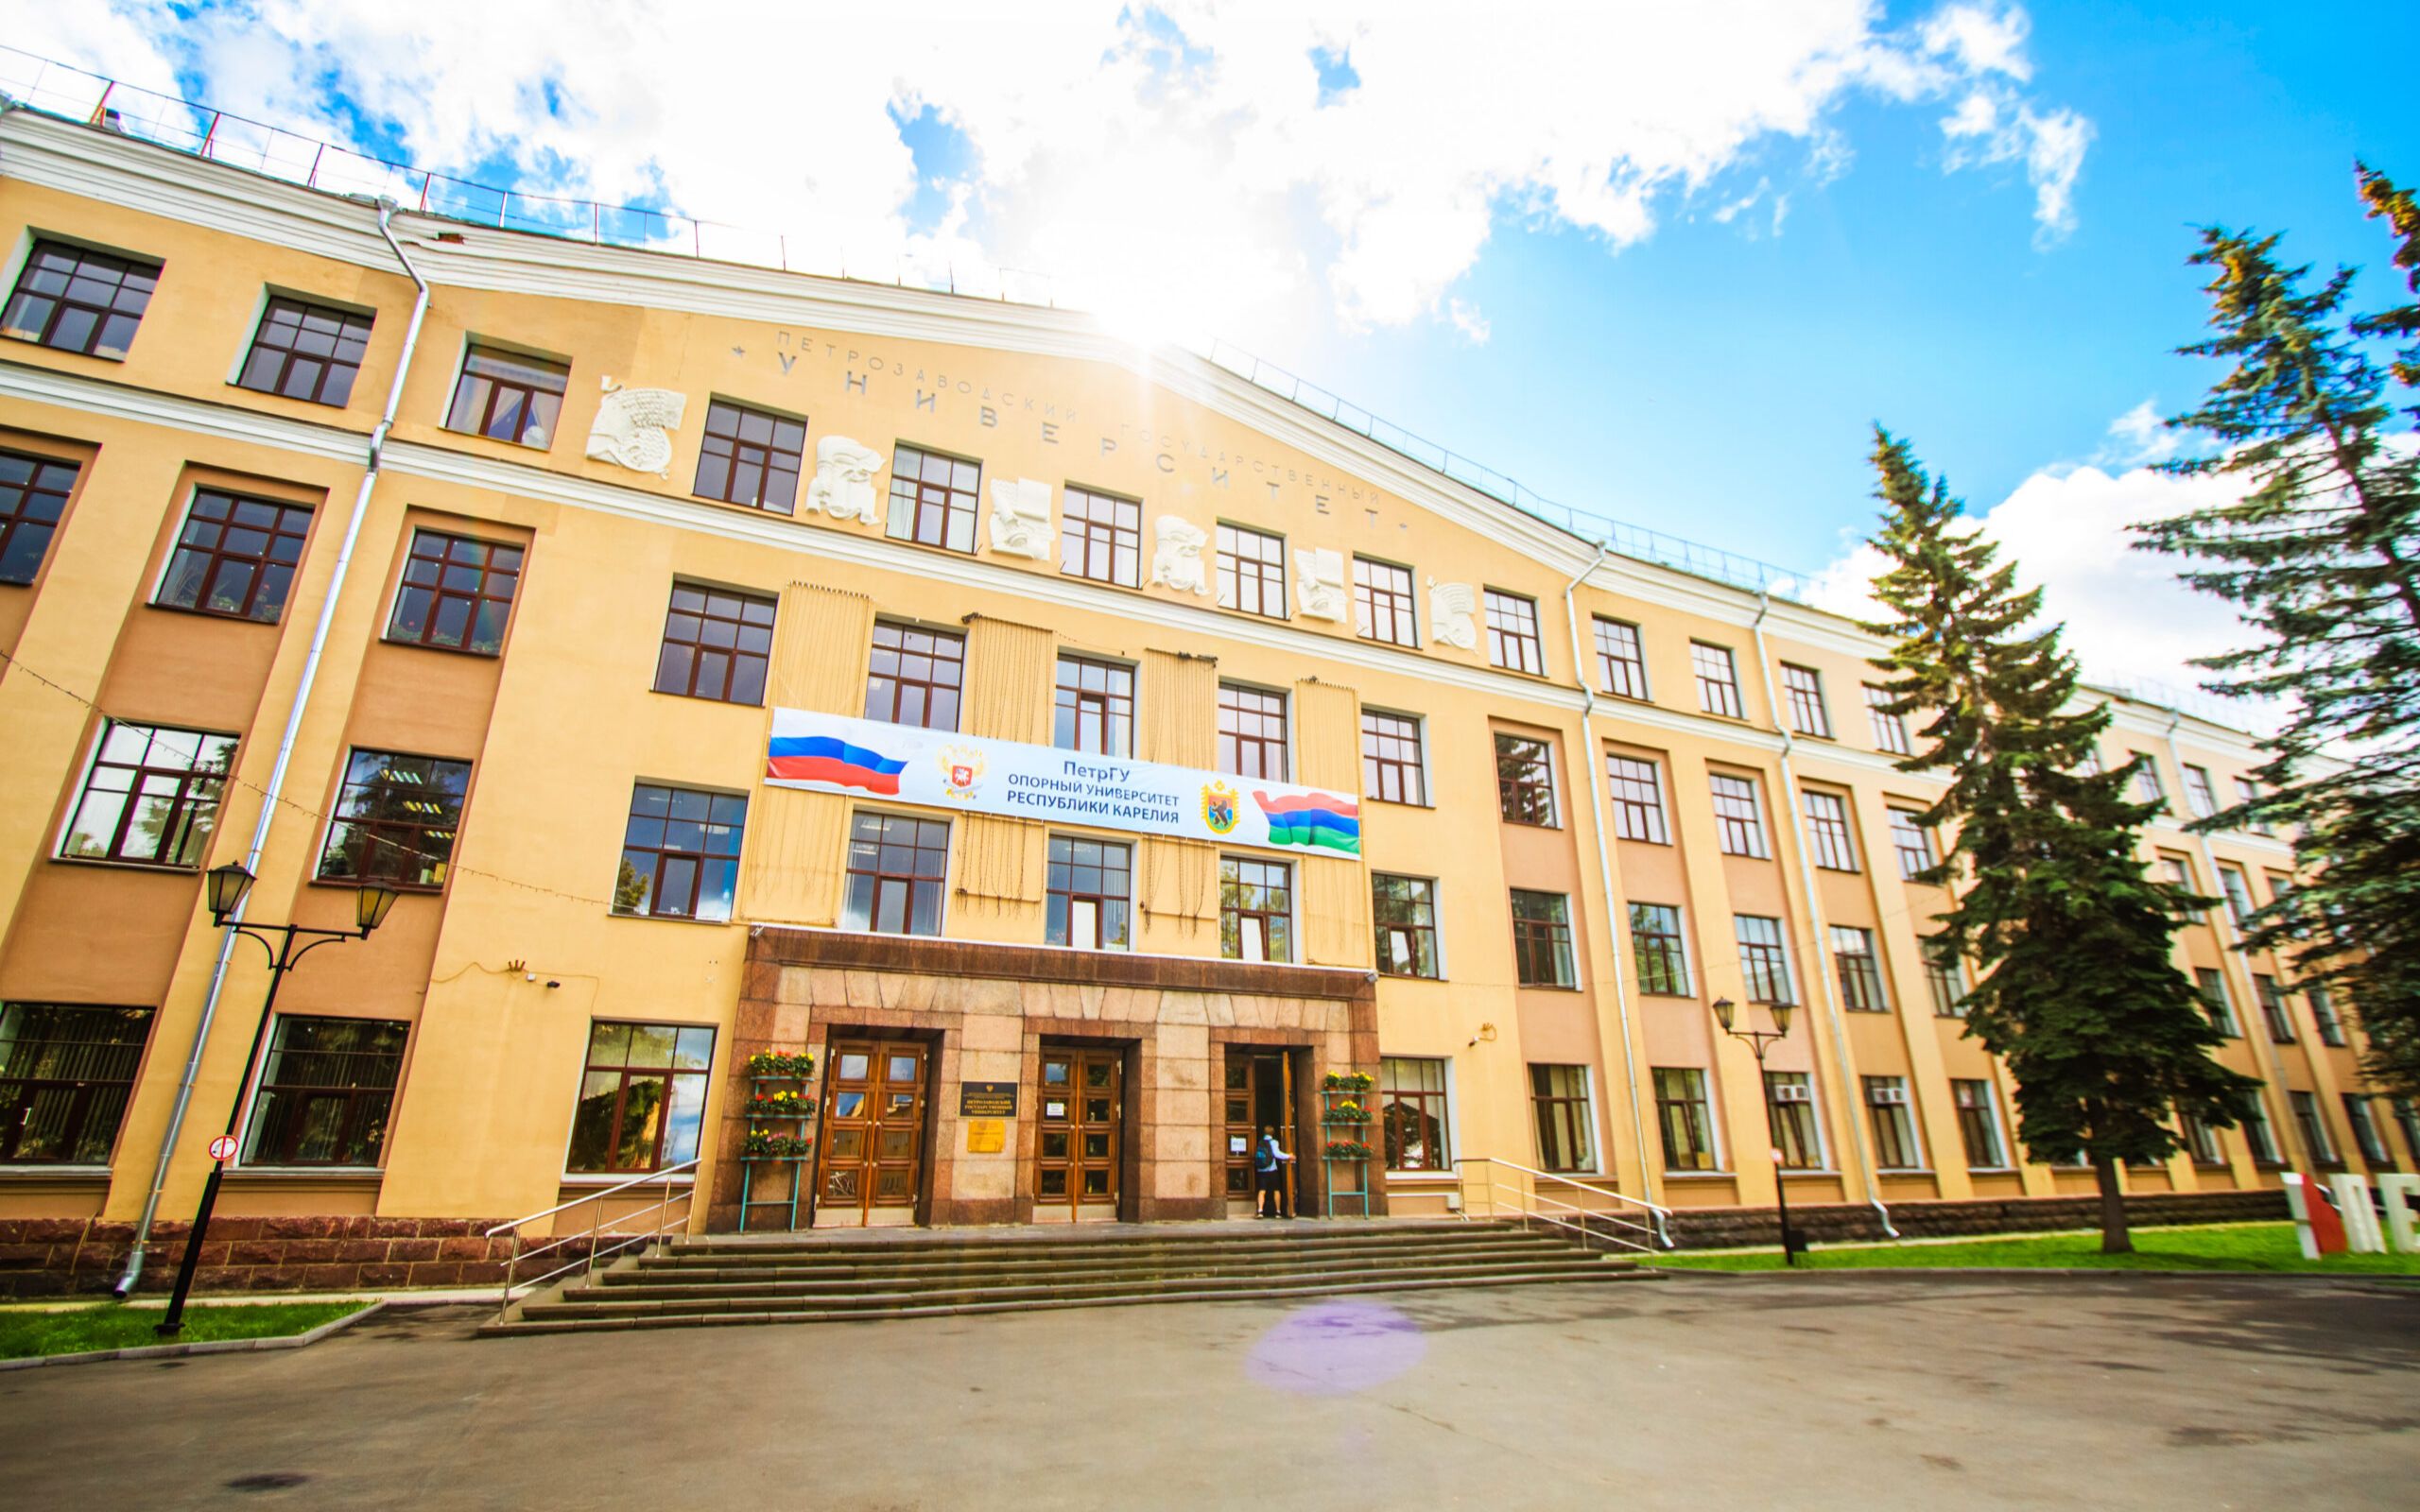 卡列利亚共和国高教科研和文化中心,彼得罗扎沃茨克国立大学